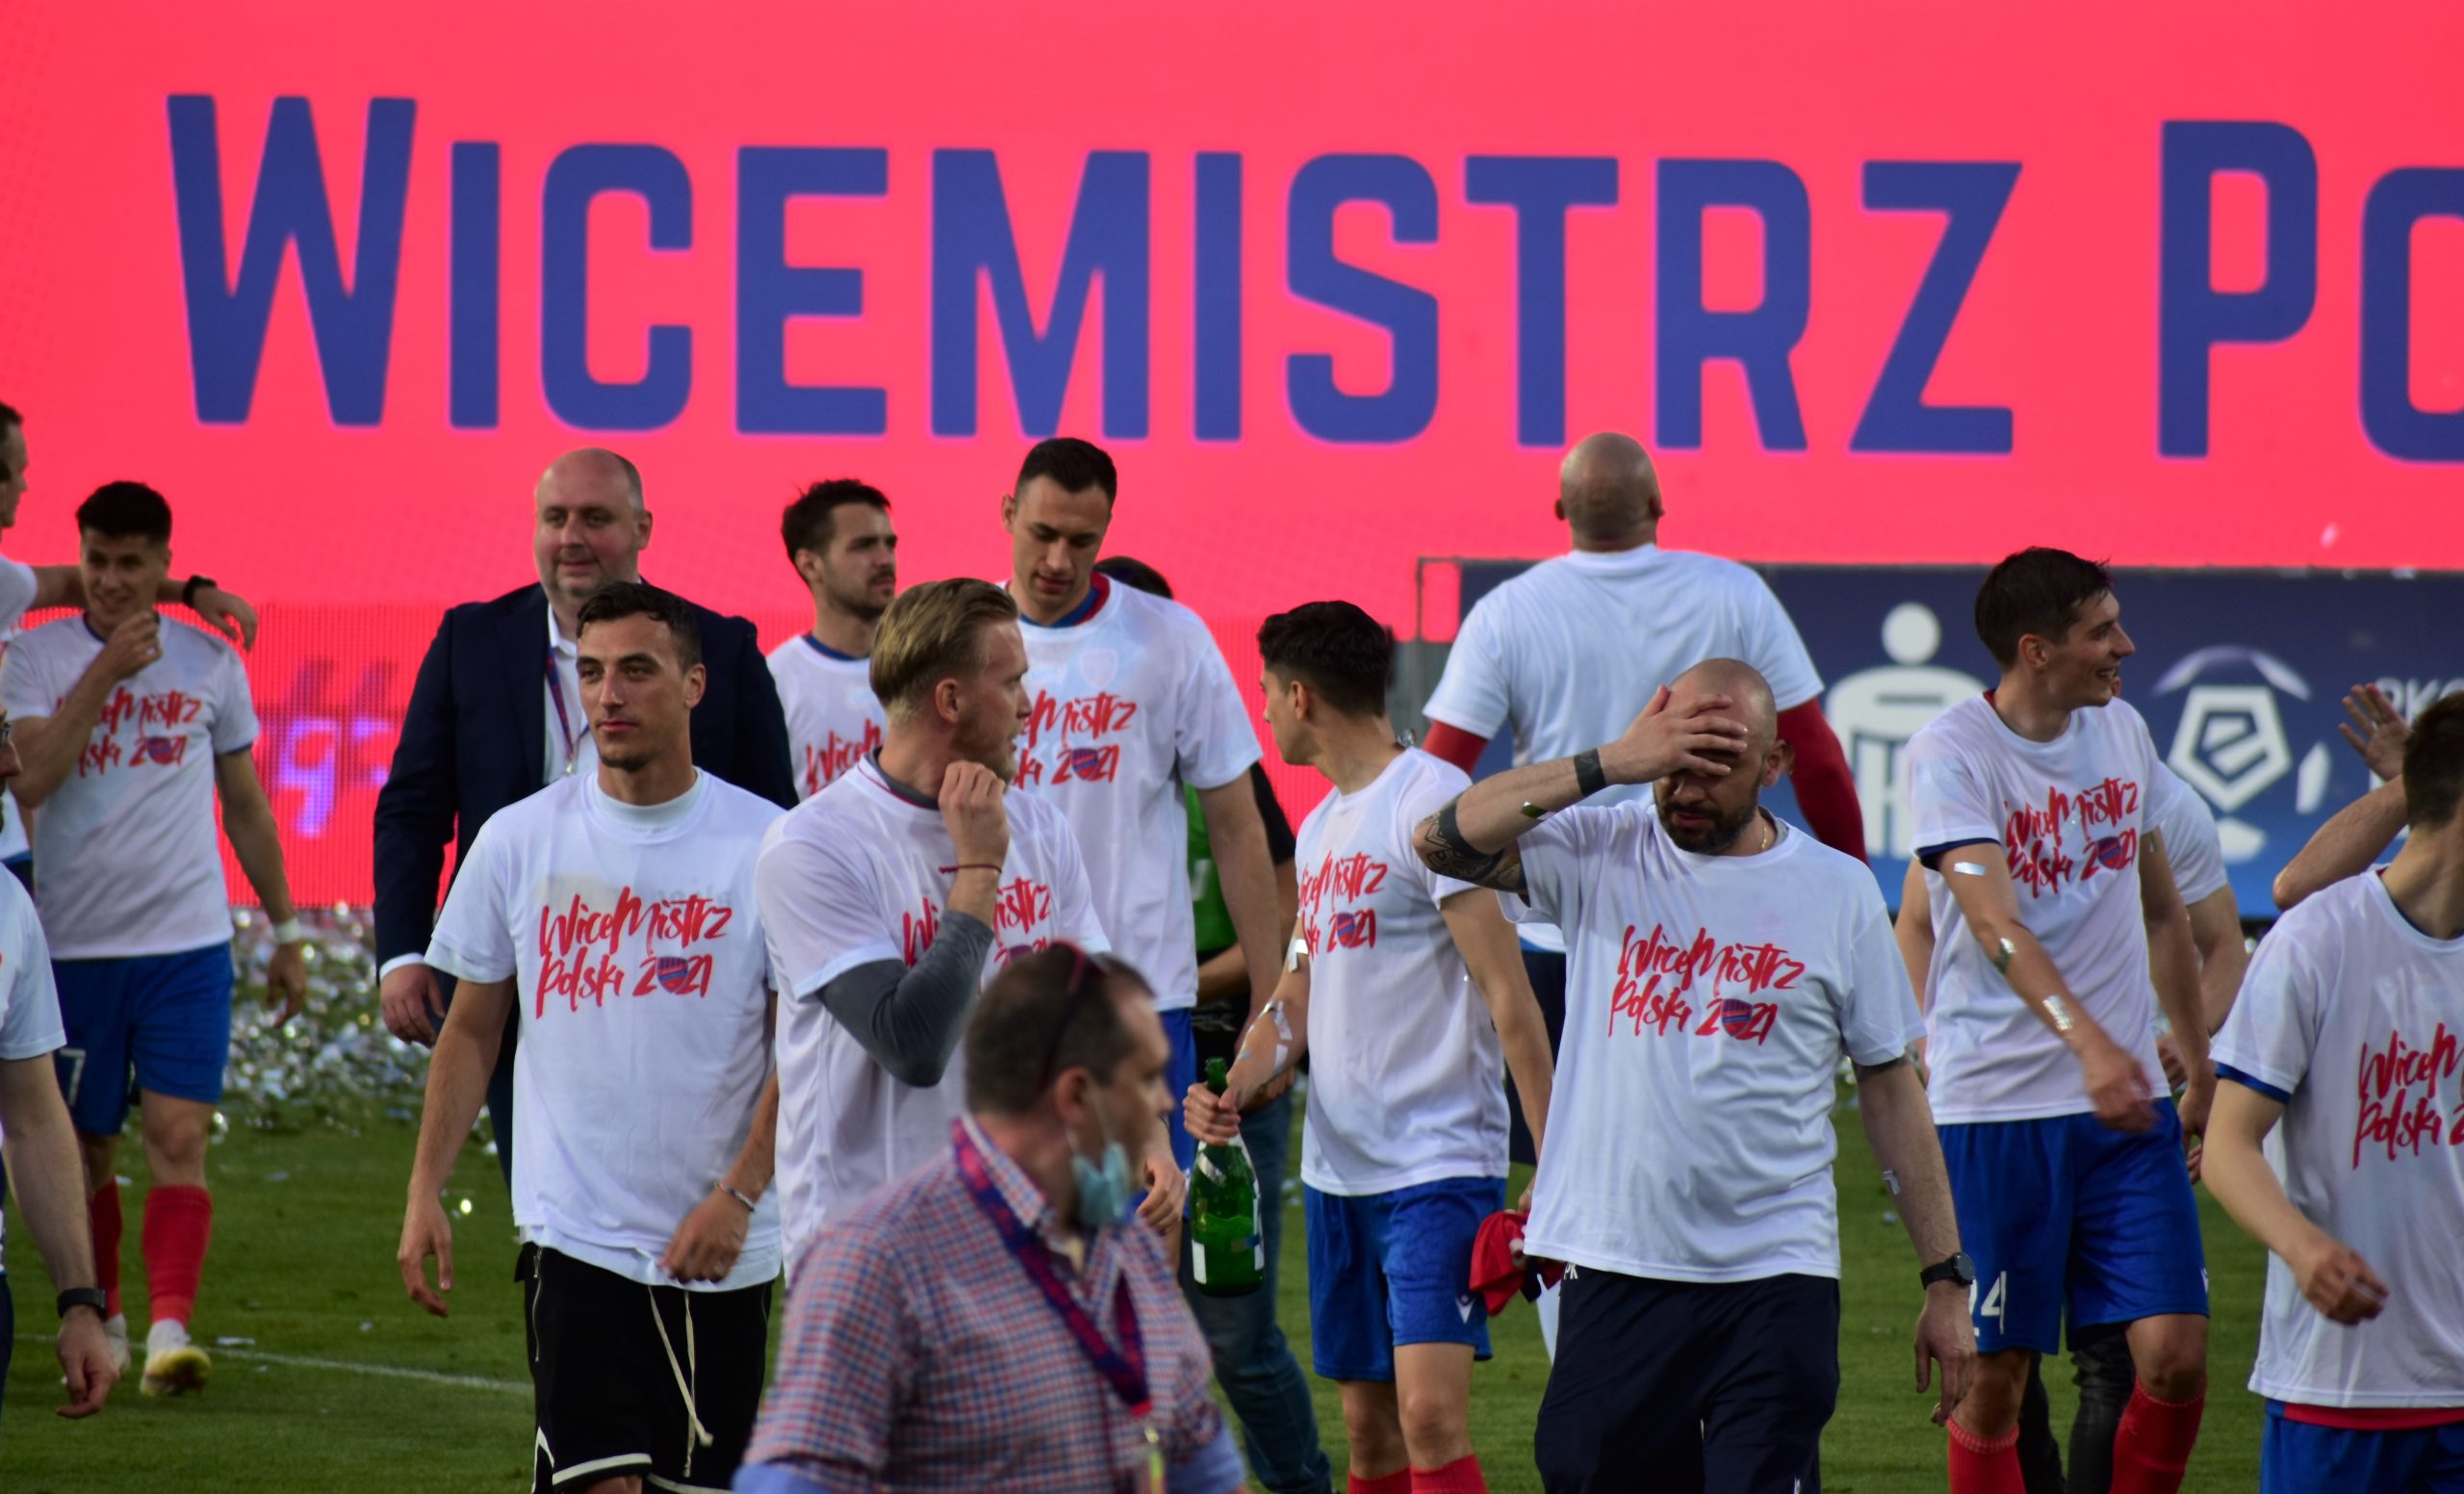 Raków wygrał w Szczecinie na zakończenie sezonu 2020/21 w PKO BP Ekstraklasie i potwierdził, że jest nieprzypadkowym wicemistrzem Polski!!! 1